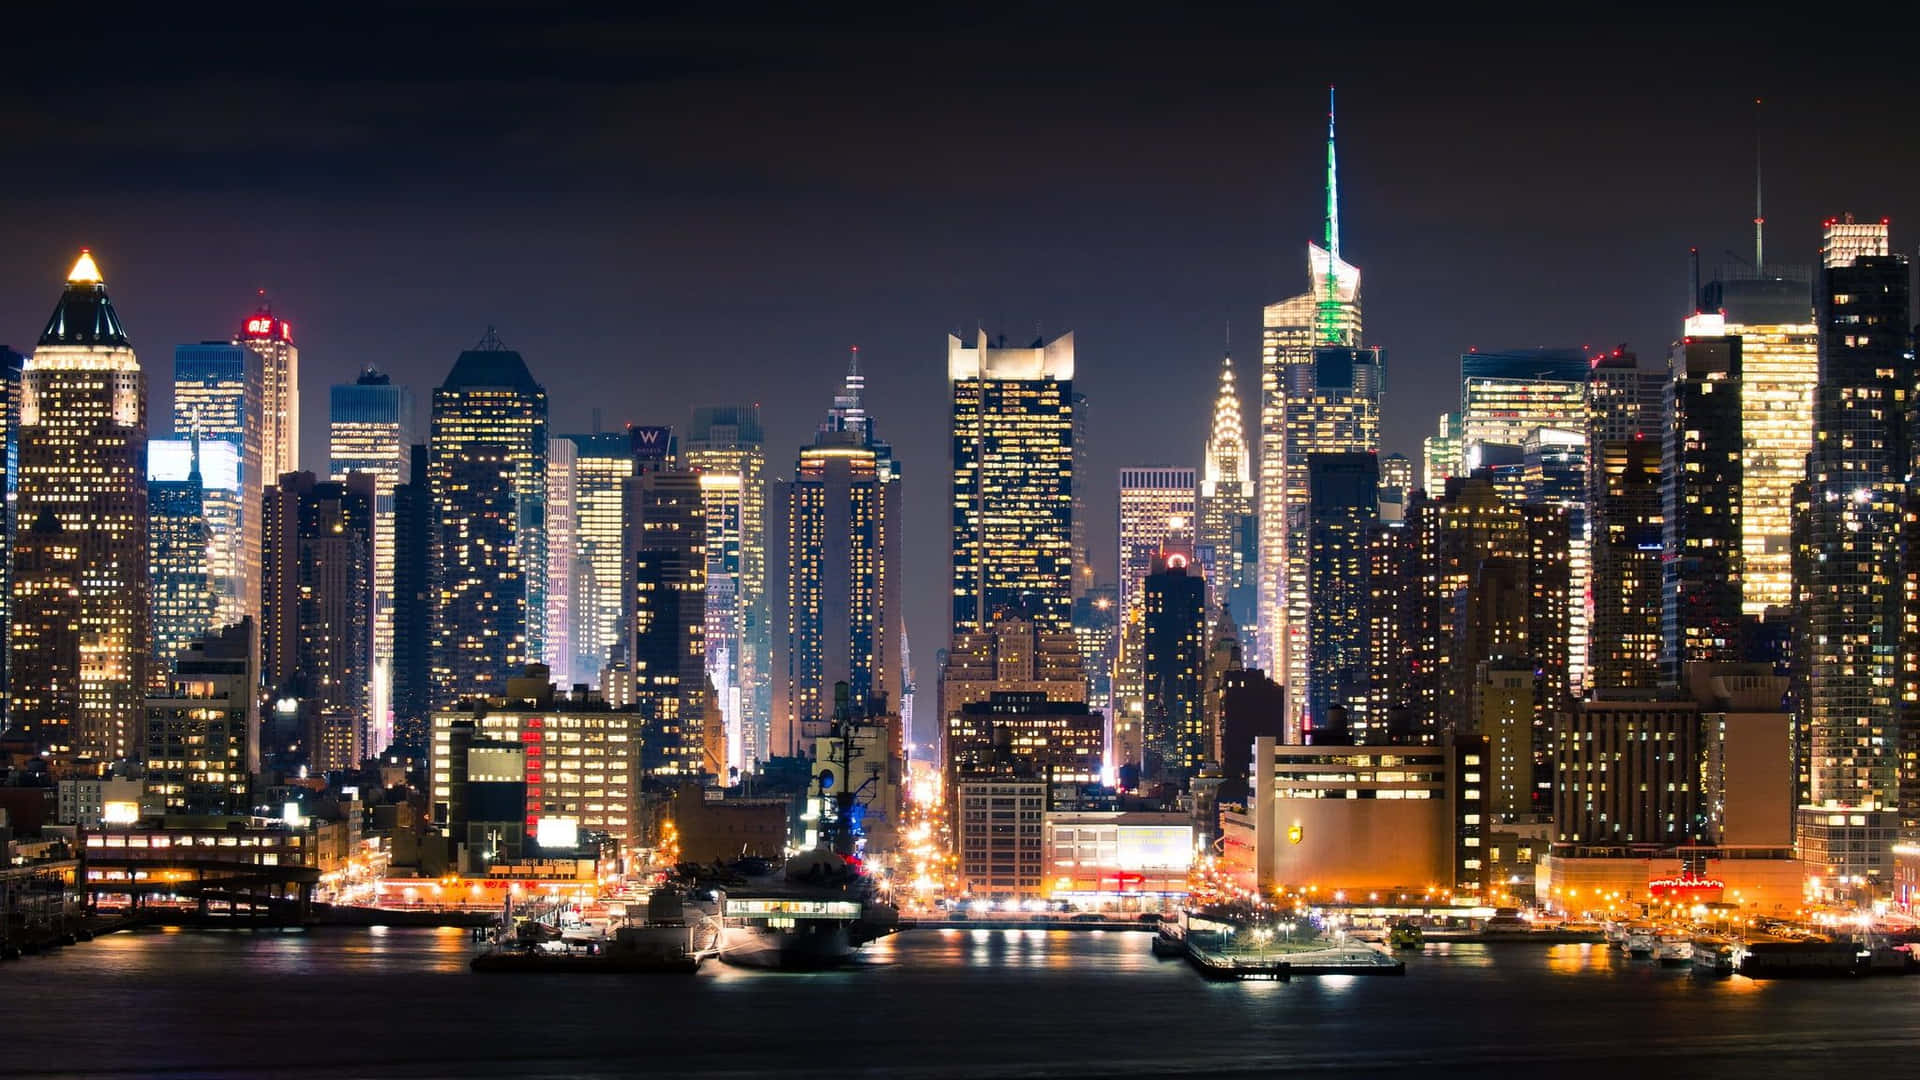 Imagende La Ciudad De Nueva York De Noche.